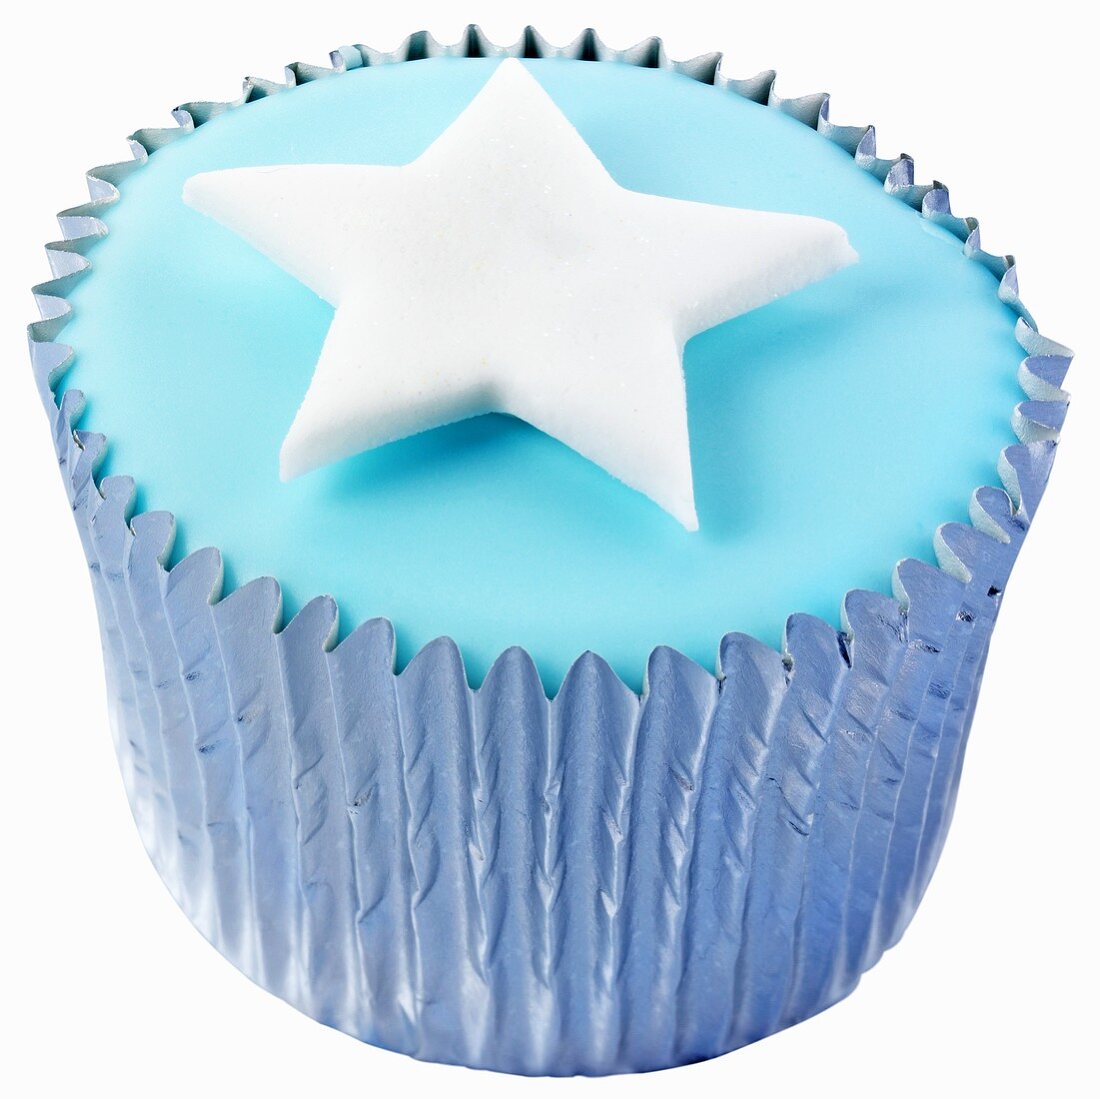 Cupcake mit blauer Glasur und Sternchen